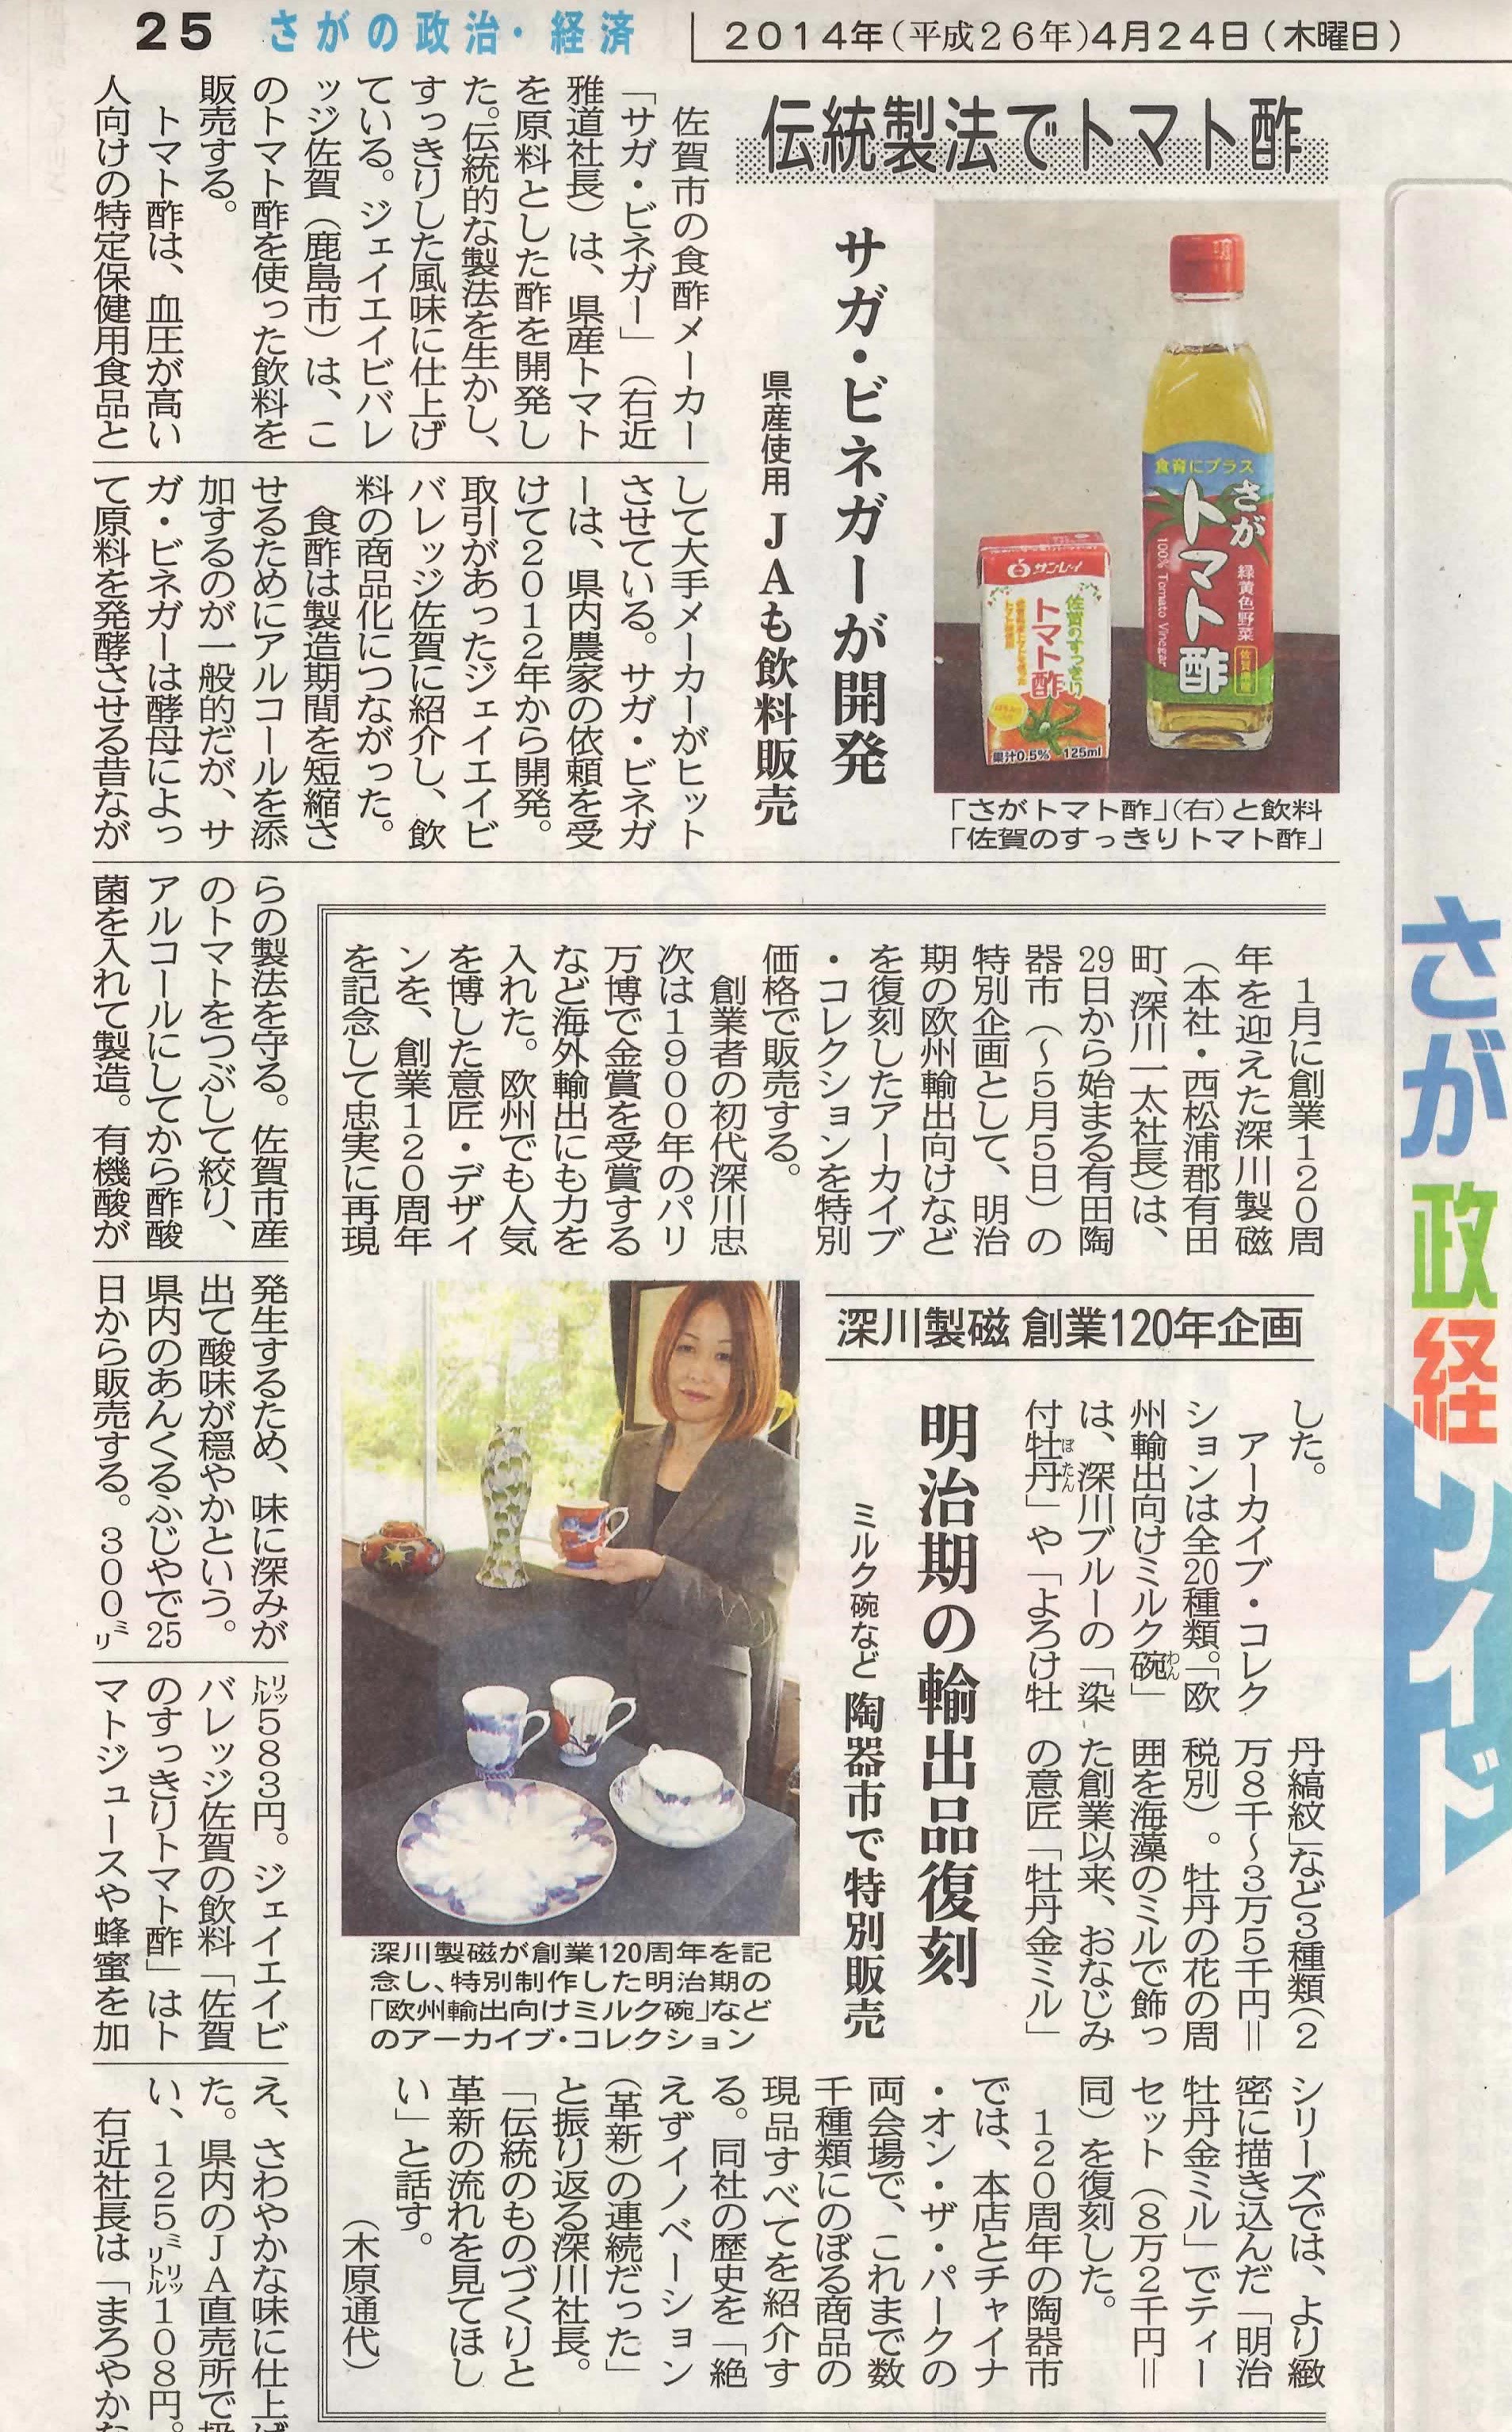 新聞掲載　2014年(平成26年)4月24日　佐賀新聞　「伝統製法でトマト酢」